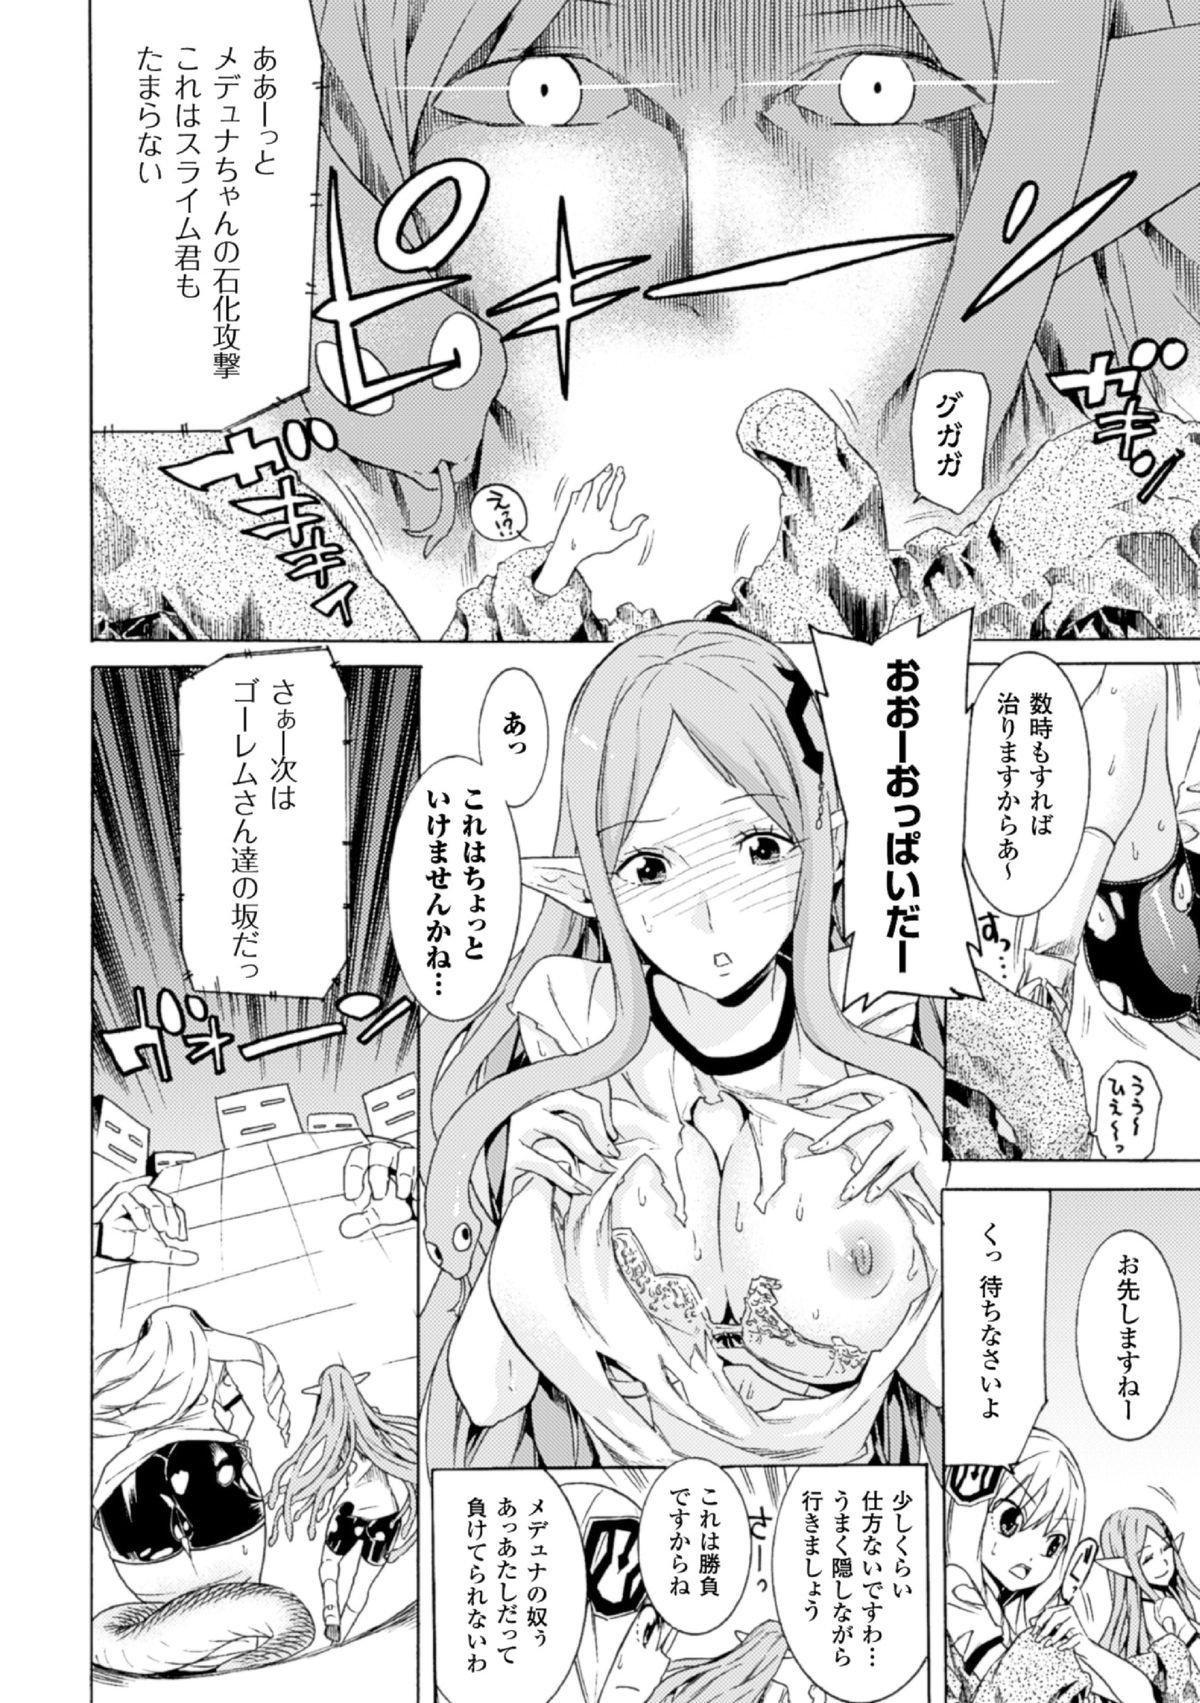 Hunks 2D Comic Magazine - Monster Musume ga Tsudou Ishuzoku Gakuen e Youkoso! Vol. 2 Gay Emo - Page 12